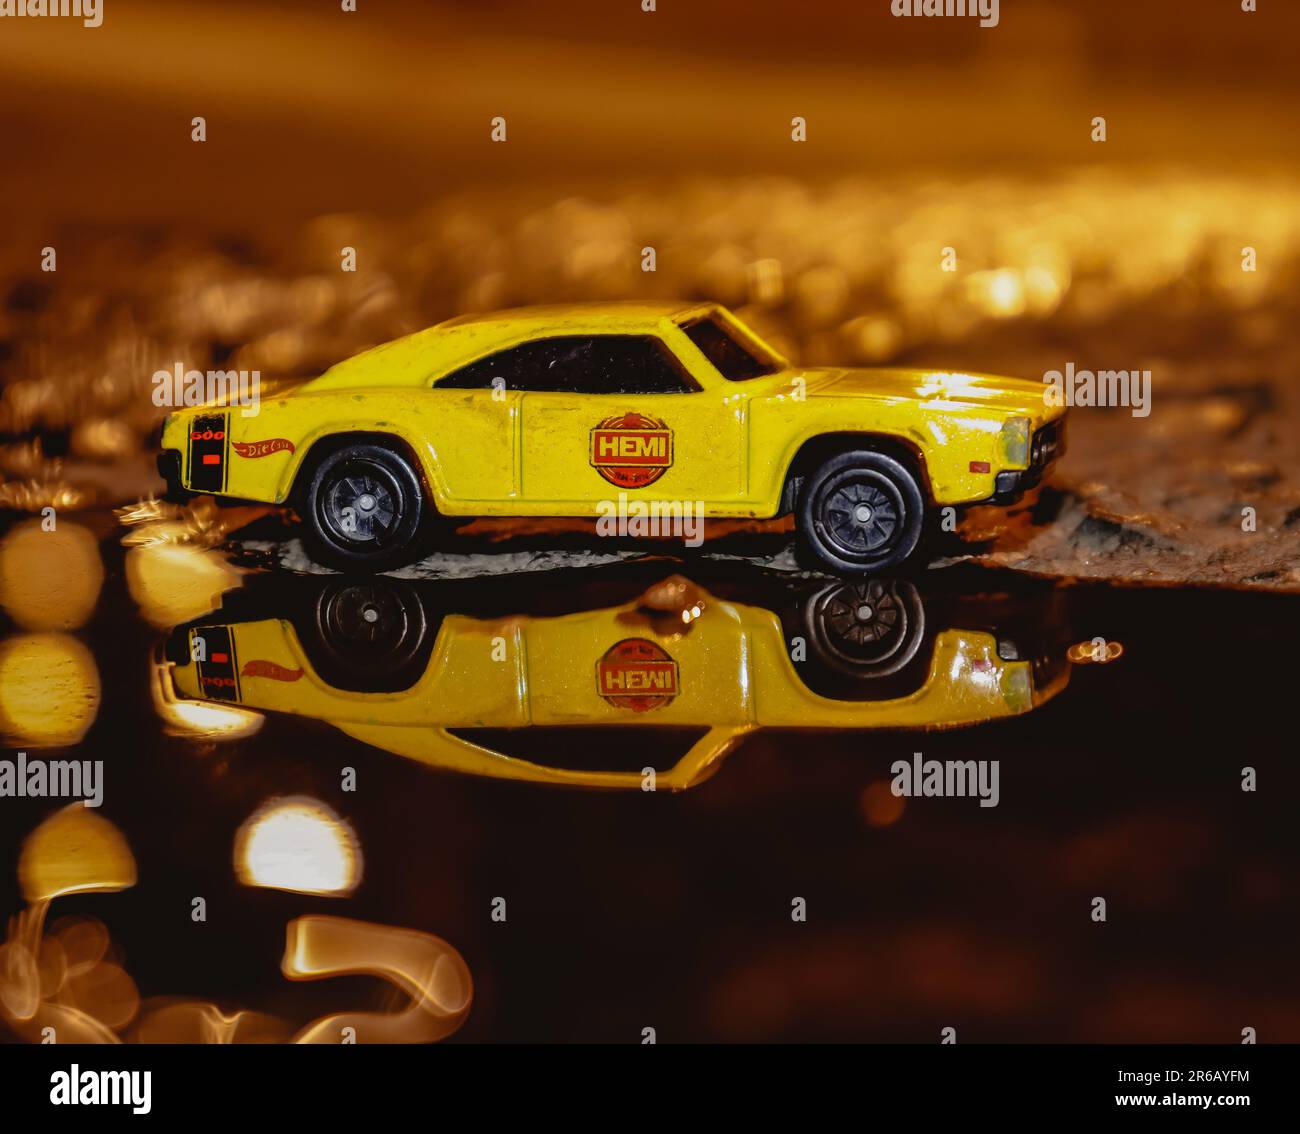 Nahaufnahme eines gelben Spielzeugautos aus Plastik vor einer reflektierenden Oberfläche mit mehreren Münzen, die um die Basis verstreut sind Stockfoto